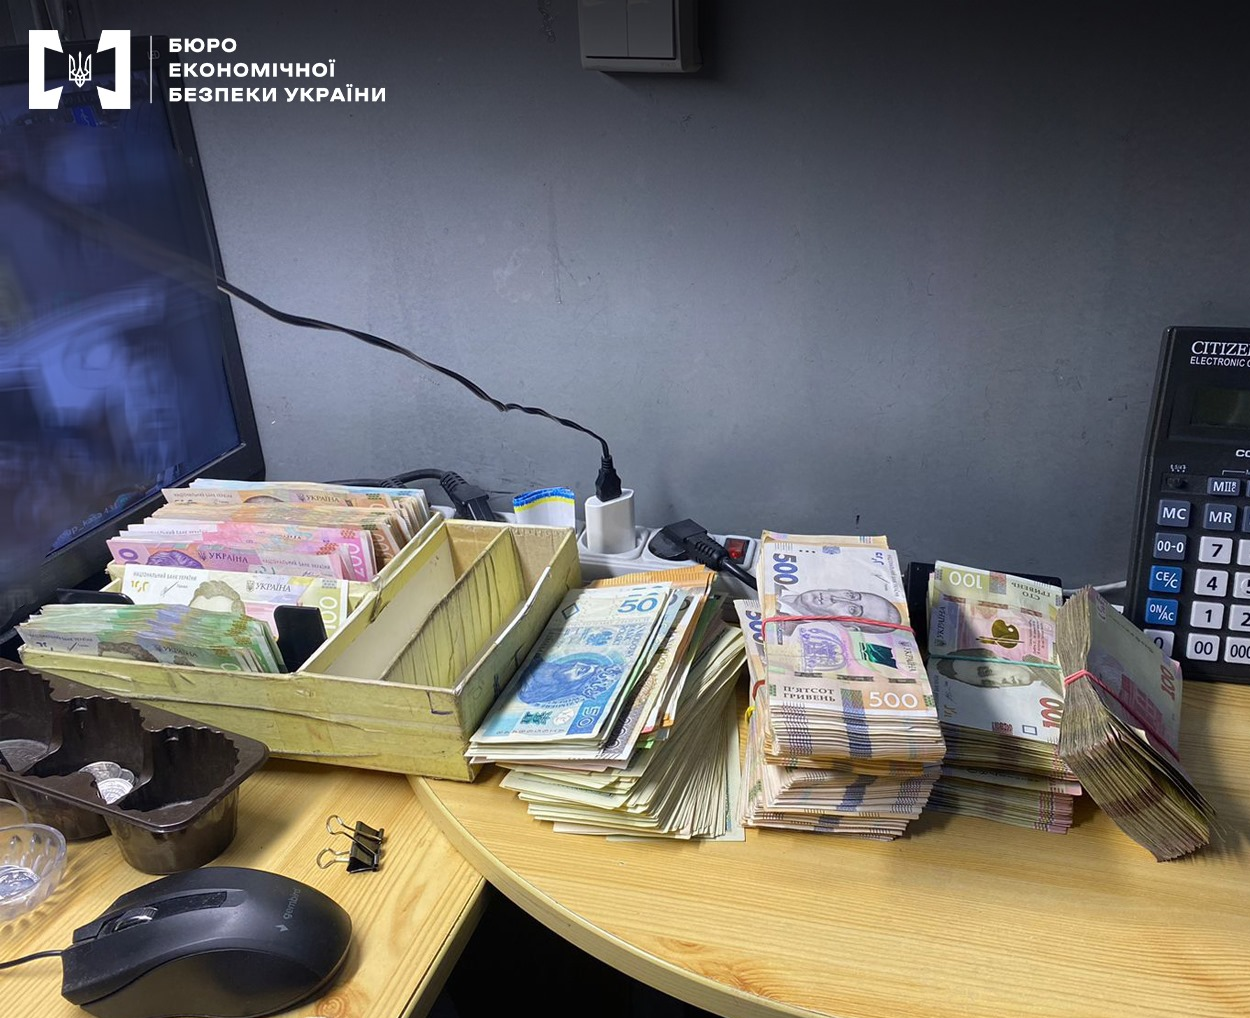 За результатами обшуків співробітники ТУ БЕБ у м. Києві вилучили готівку в іноземній та вітчизняній валюті, техніку та документацію на понад 2 мільйони гривень